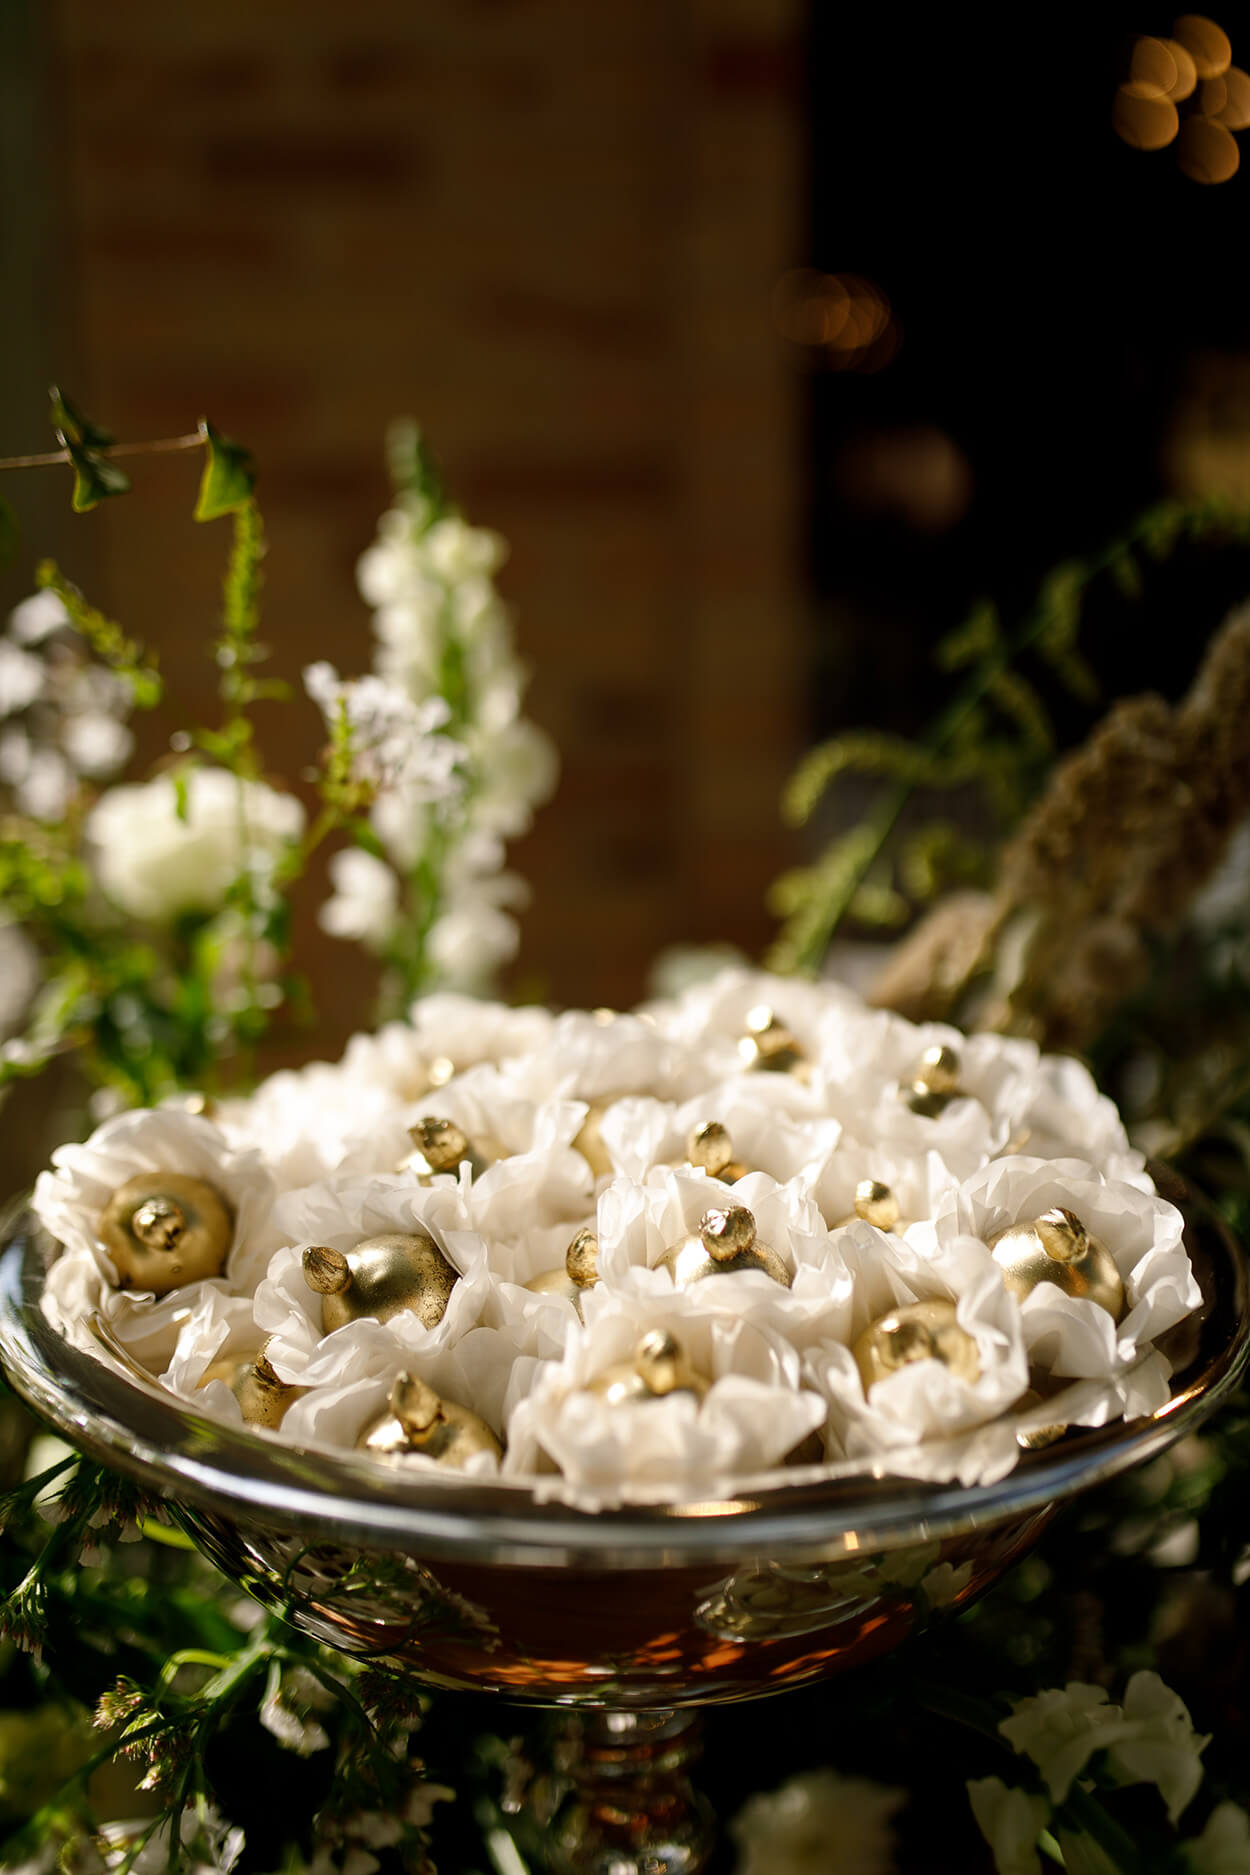 bandeja prata com doces dourados em embalagem de flor branca